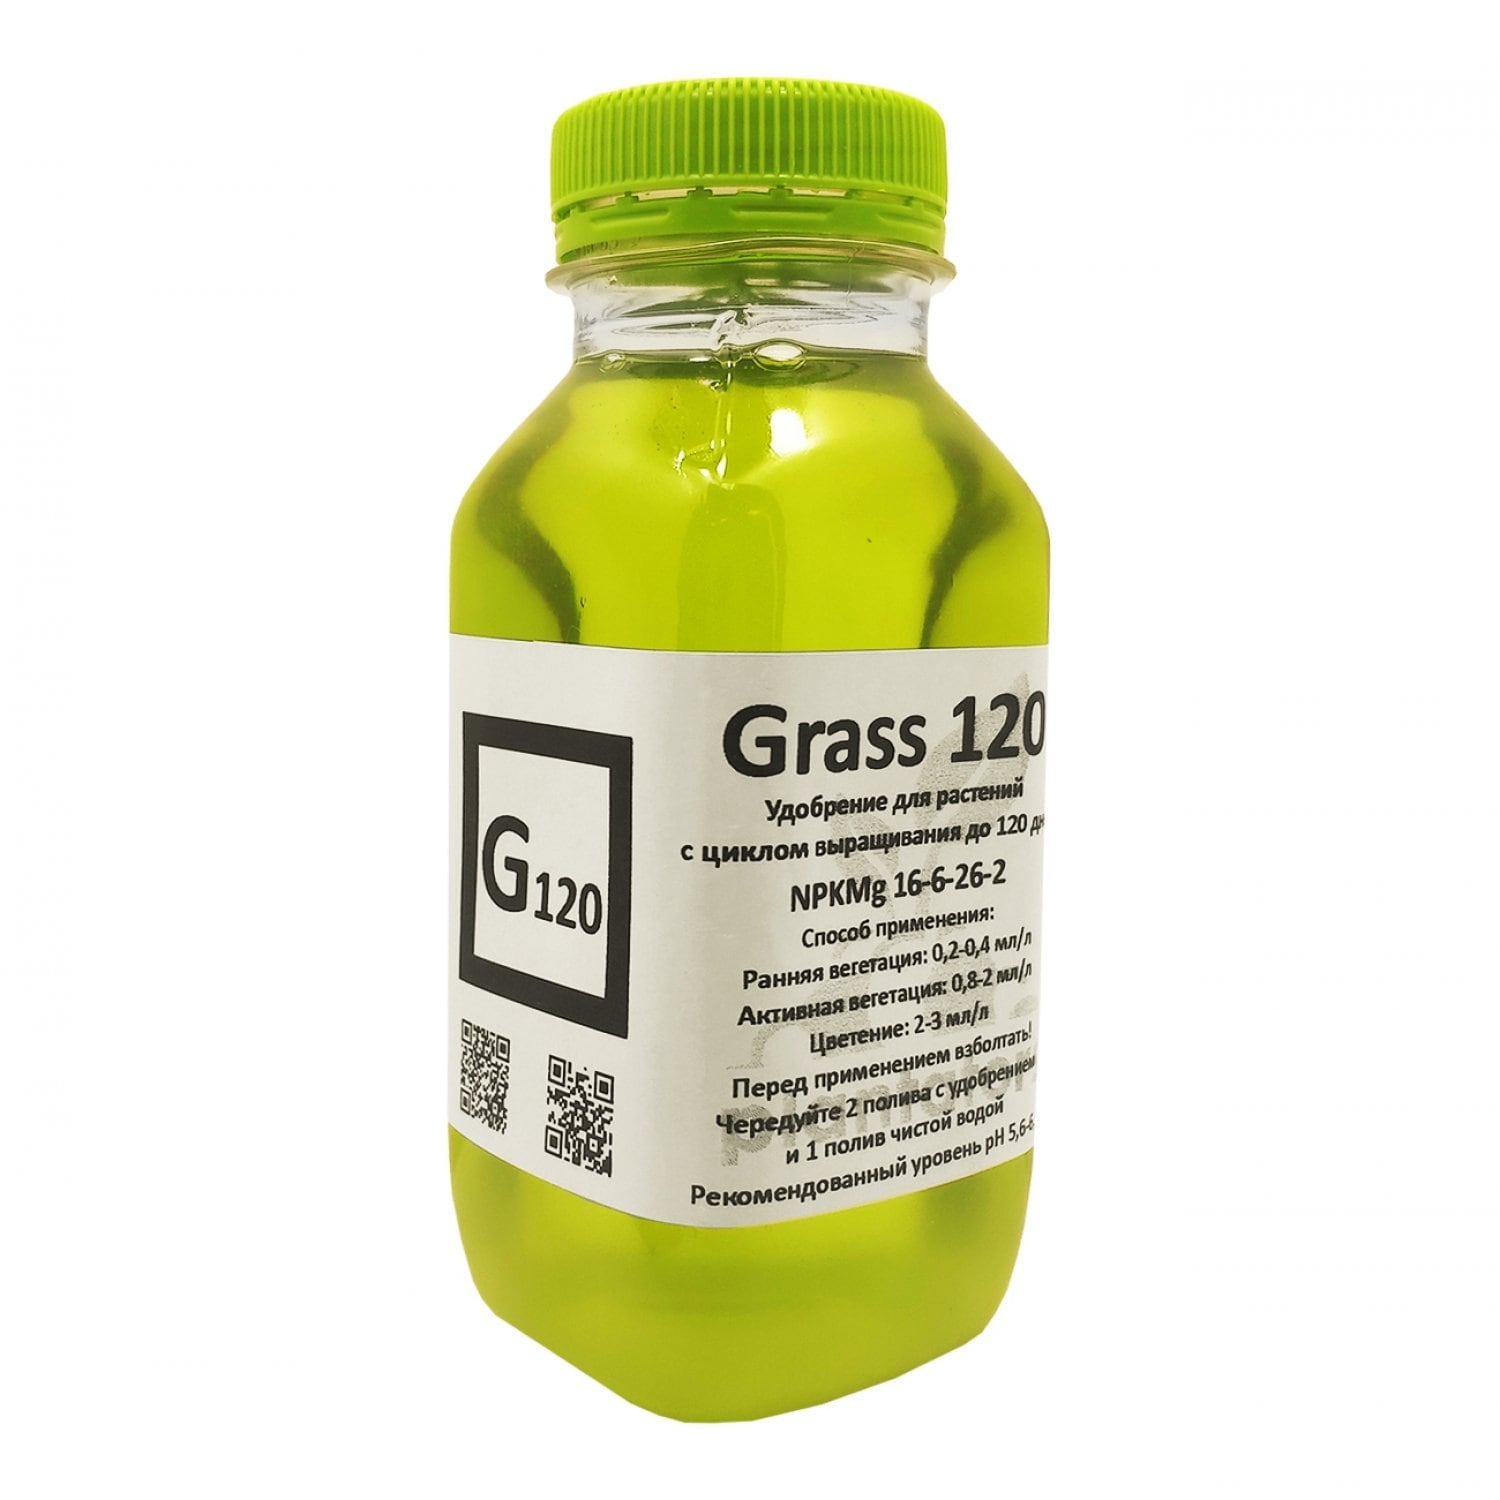 Grass 120